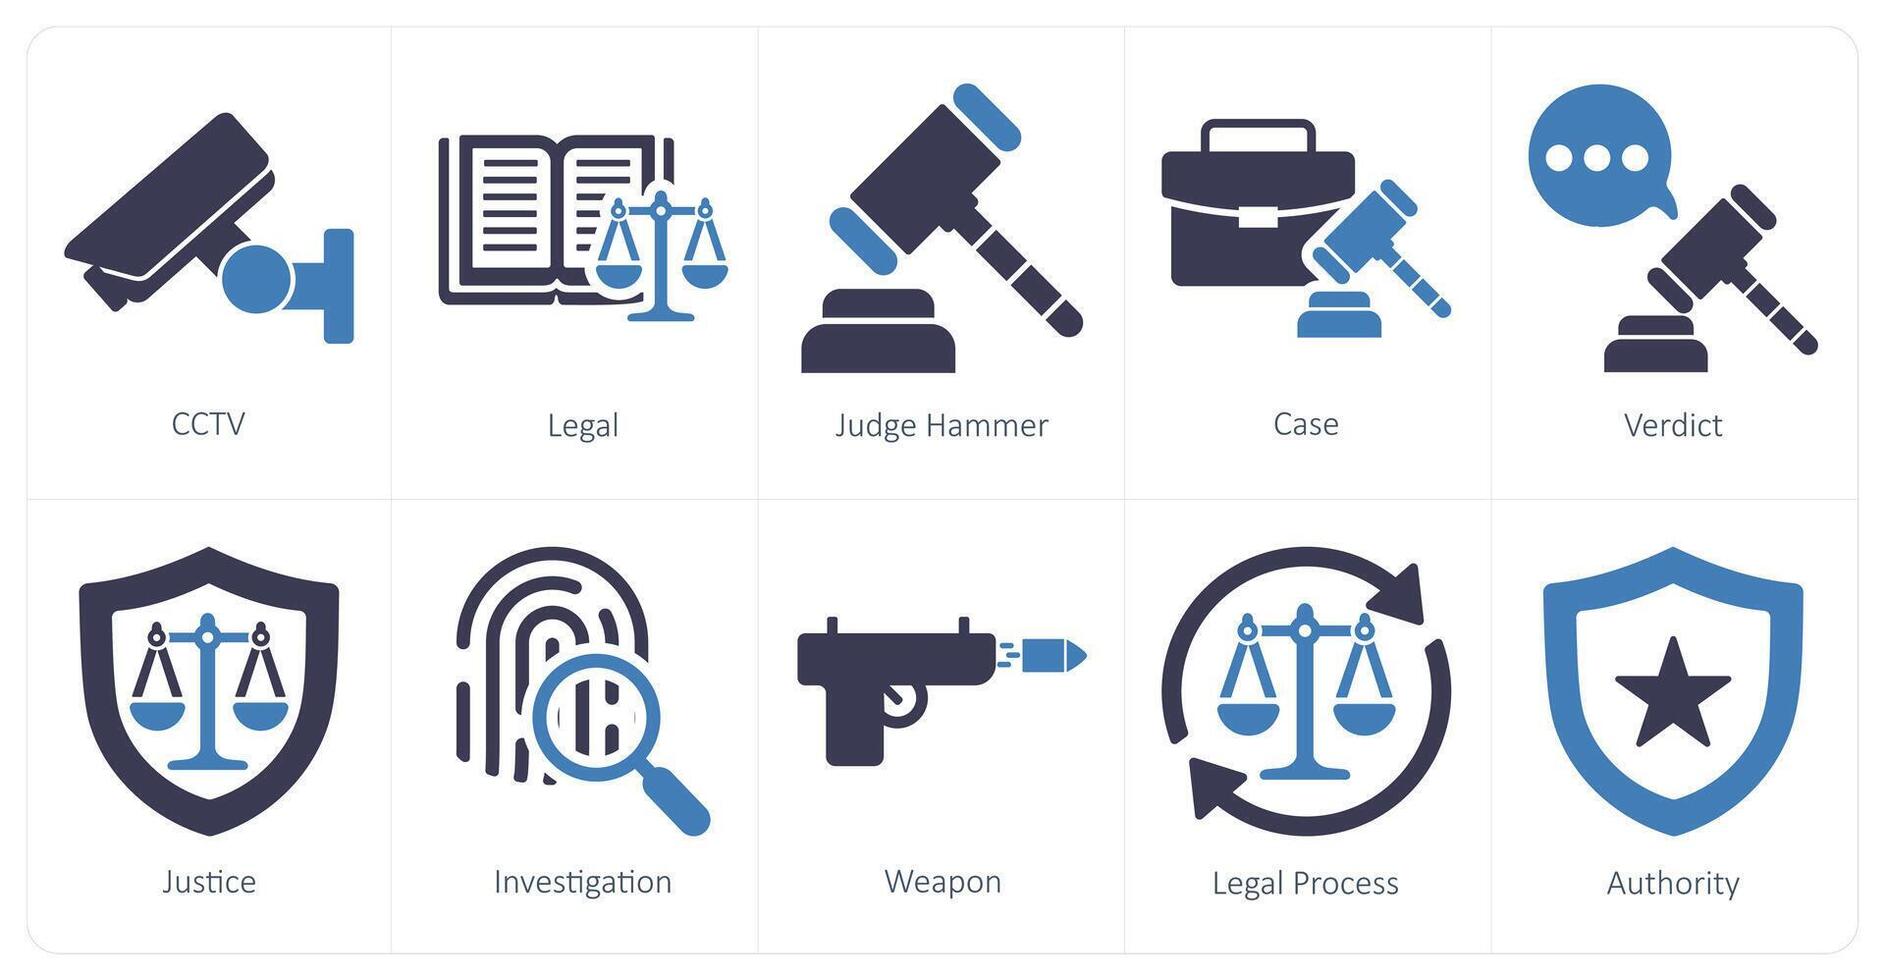 uma conjunto do 10 justiça ícones Como CFTV, jurídico, juiz martelo vetor